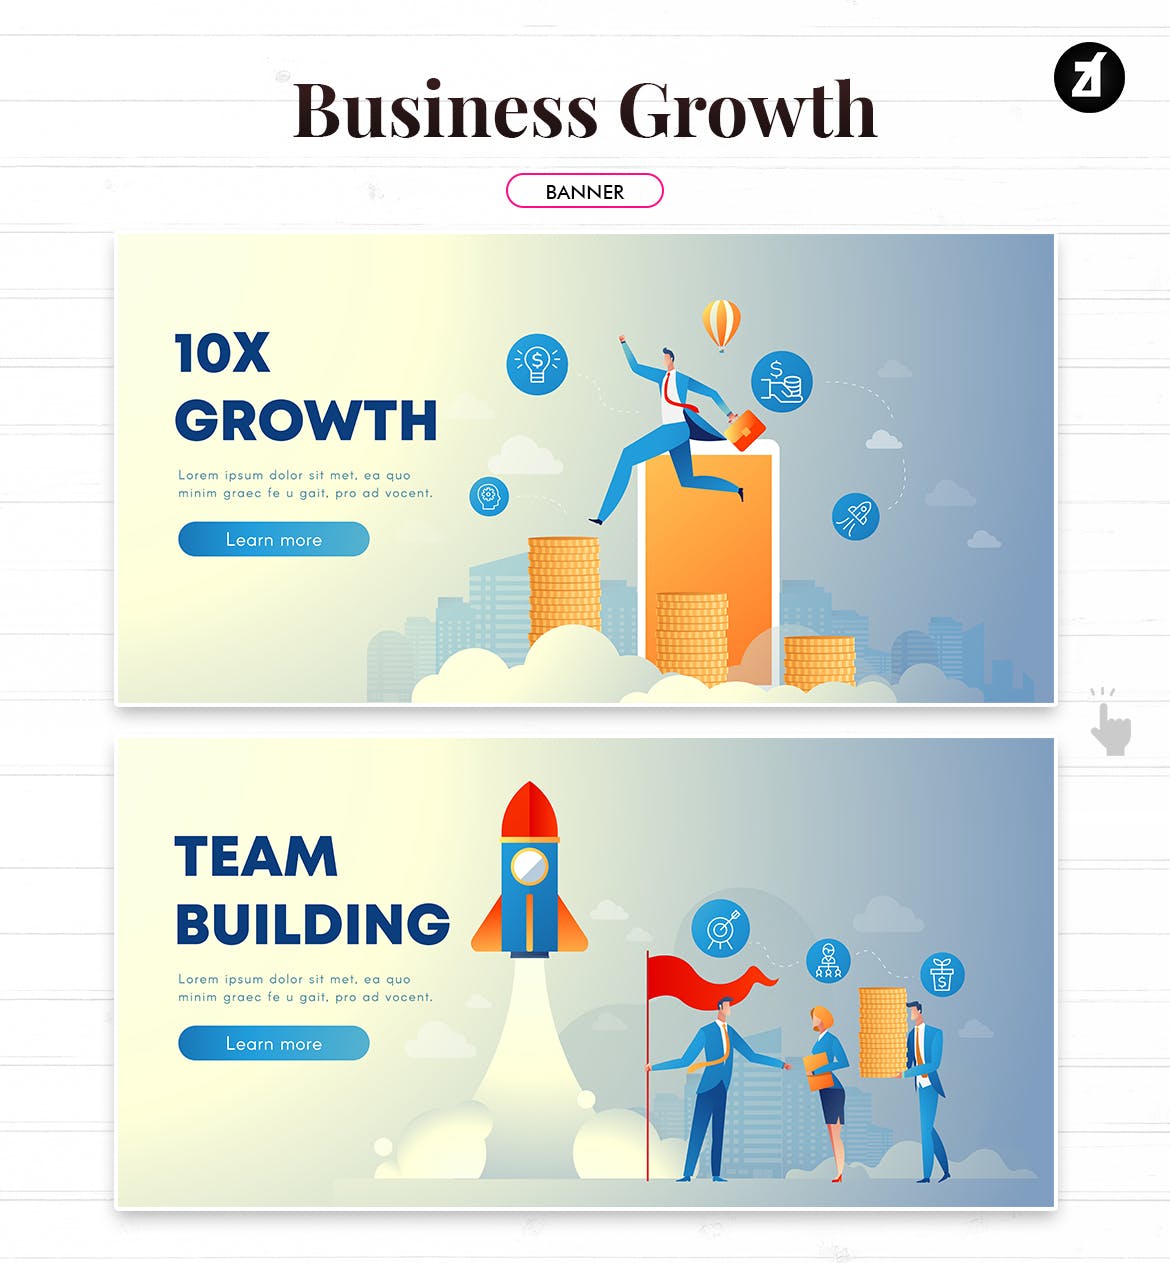 业务增长企业主题矢量插画素材 Business growth illustration with text layout插图(3)